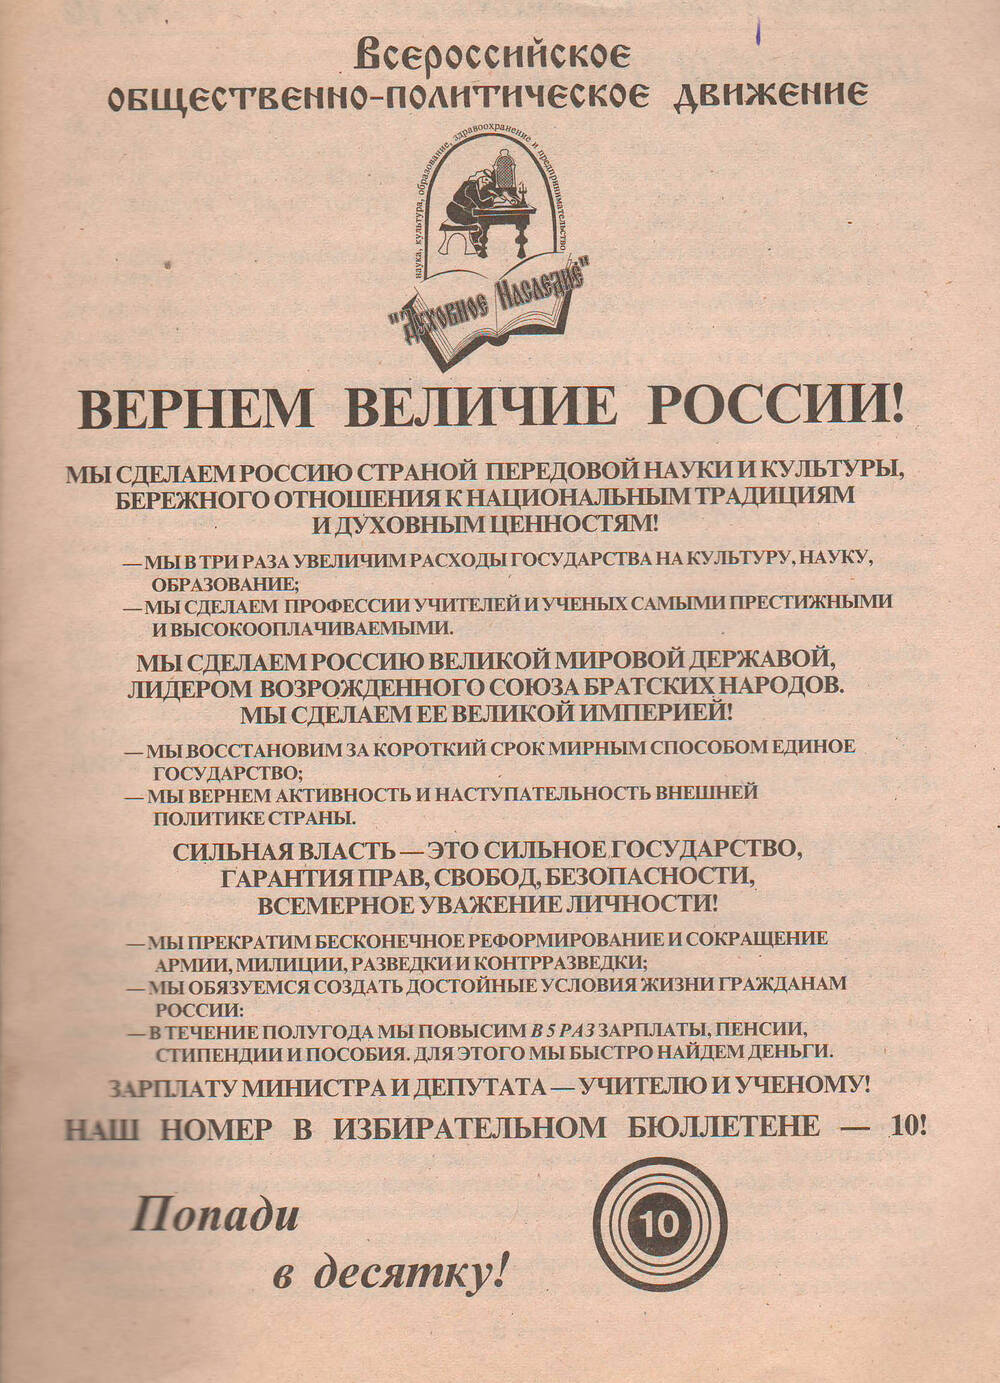 Брошюра агитационная избирательного блока Духовное наследие №10 1999 года.